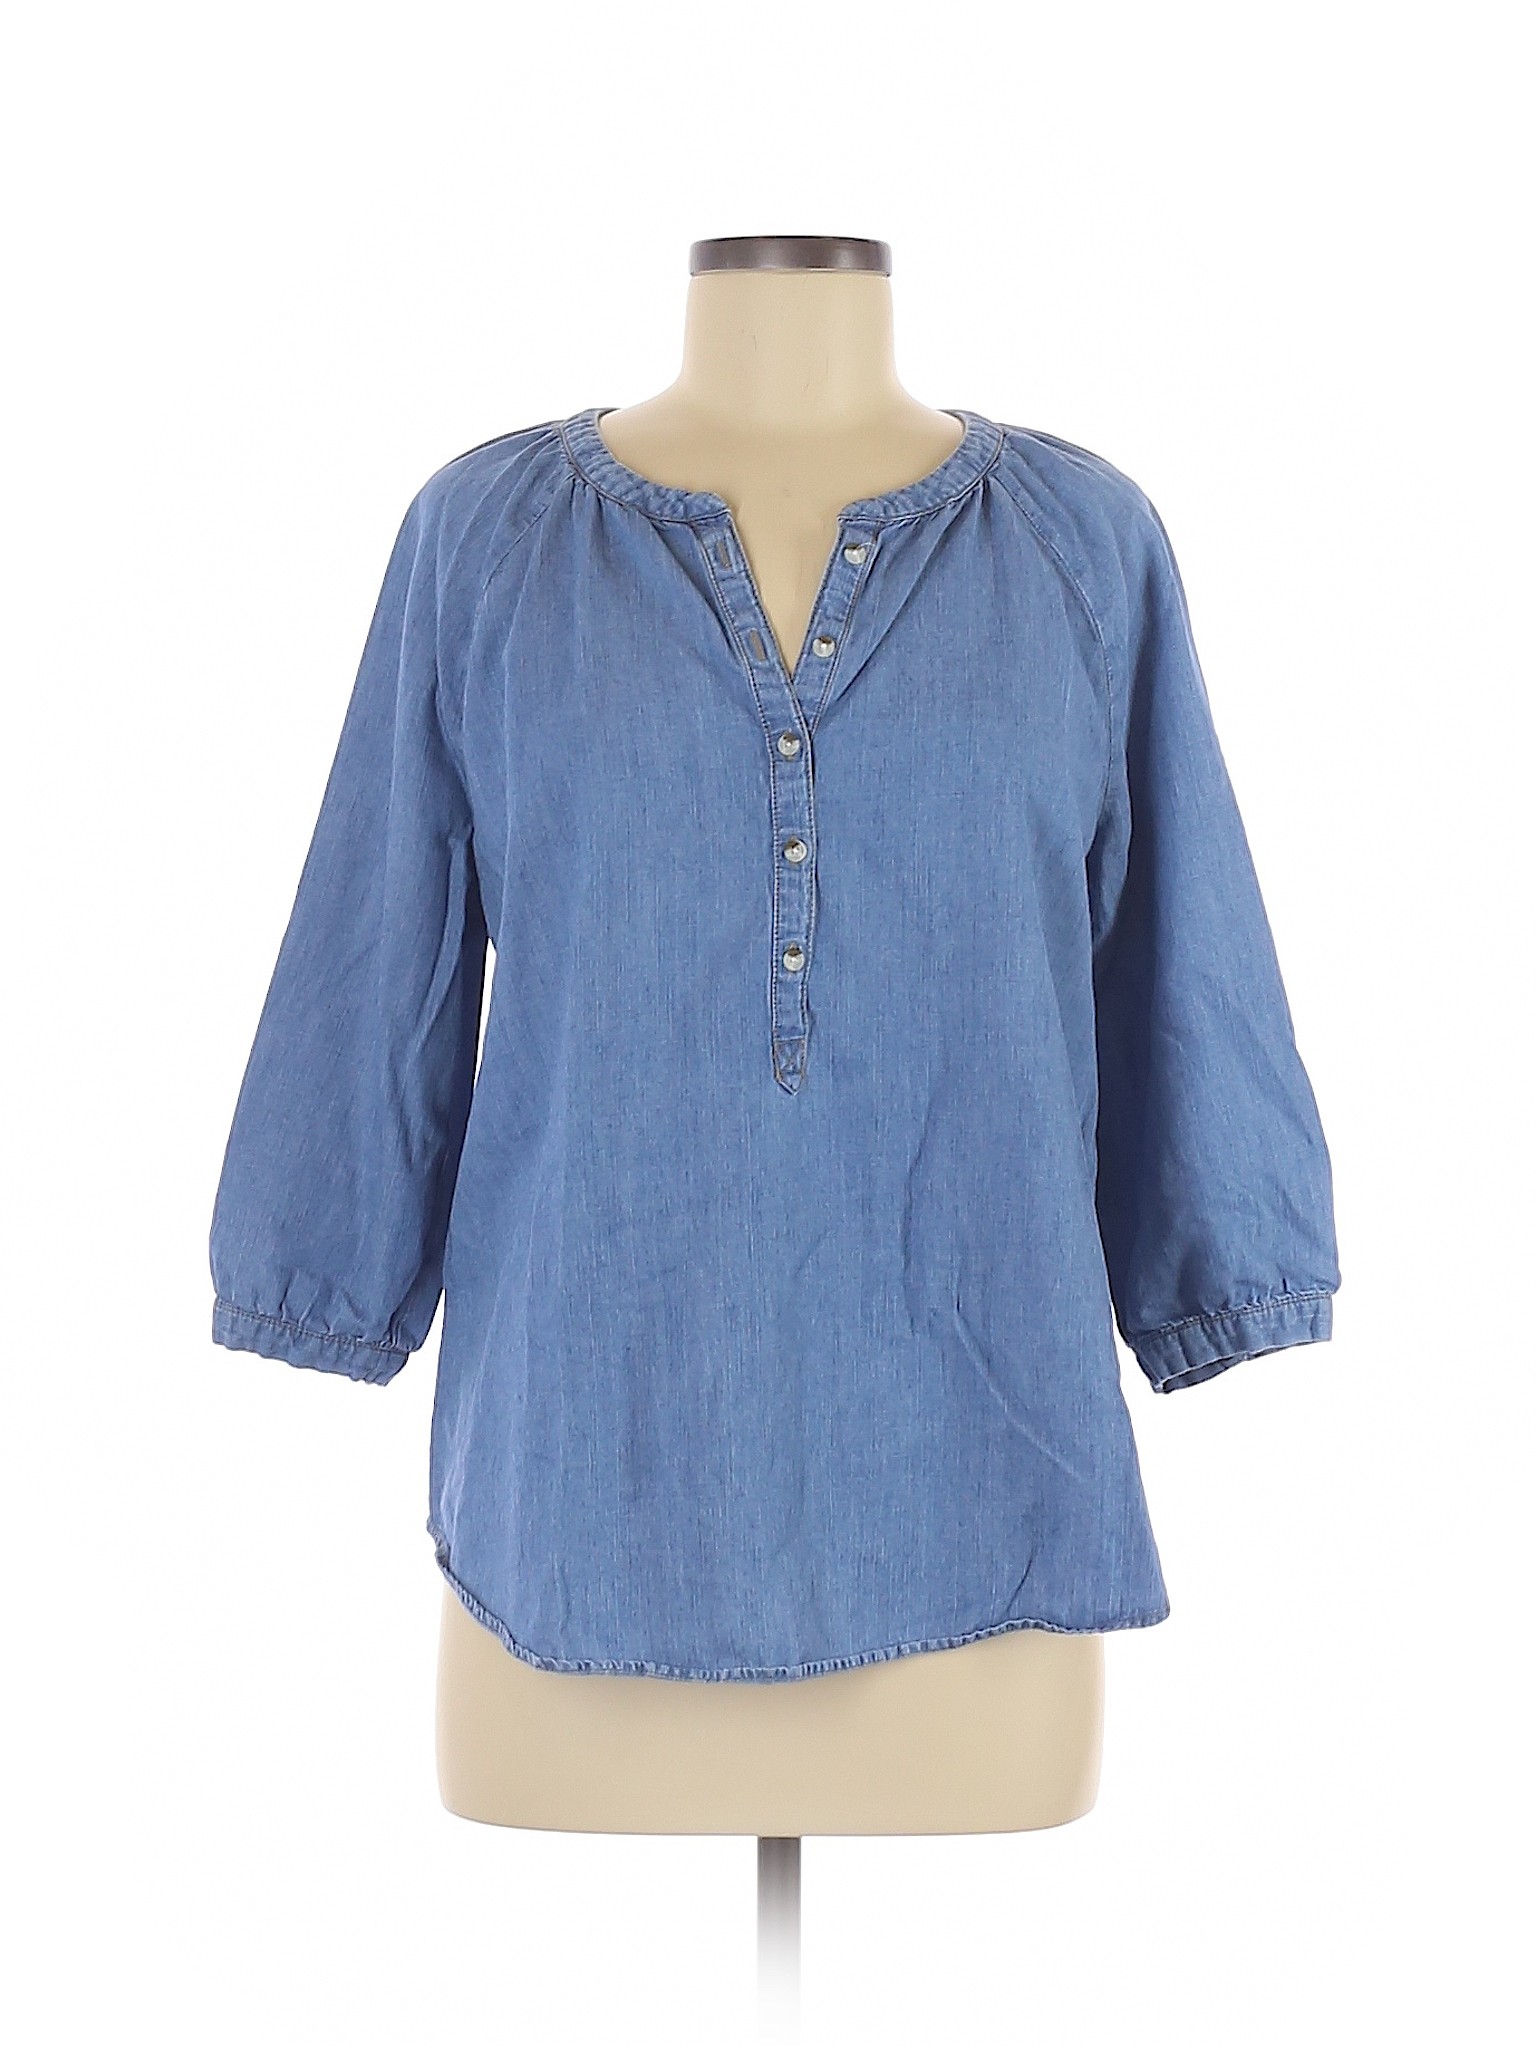 SONOMA life + style Women Blue 3/4 Sleeve Blouse M | eBay